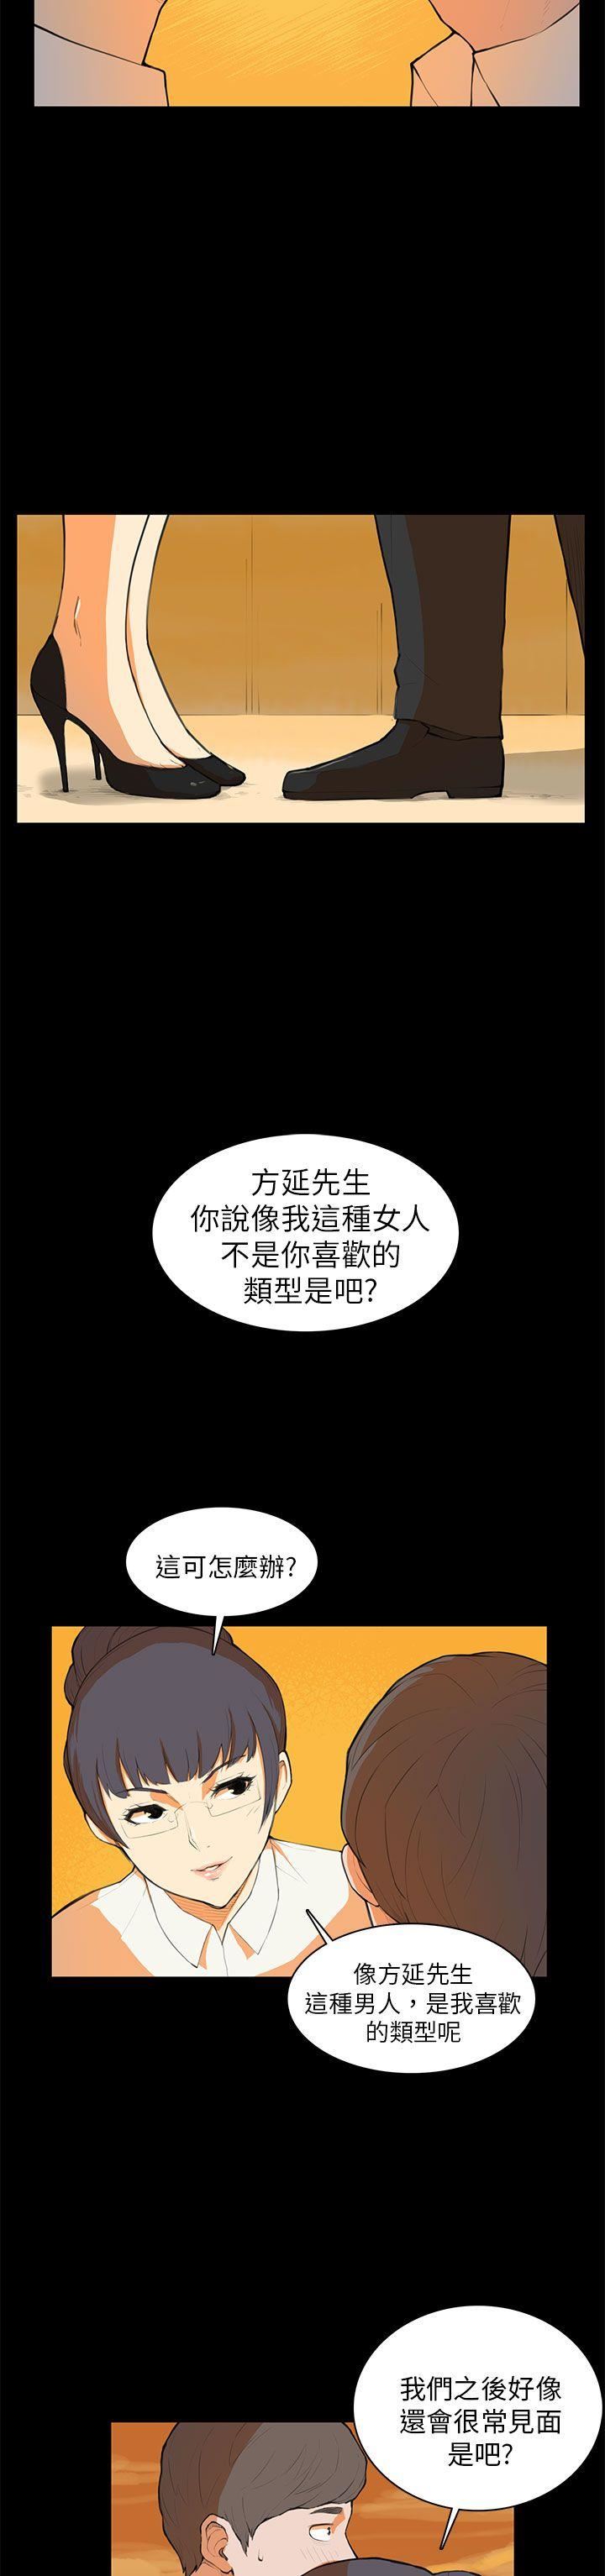 韩国污漫画 斯德哥爾摩癥候群 第7话 2